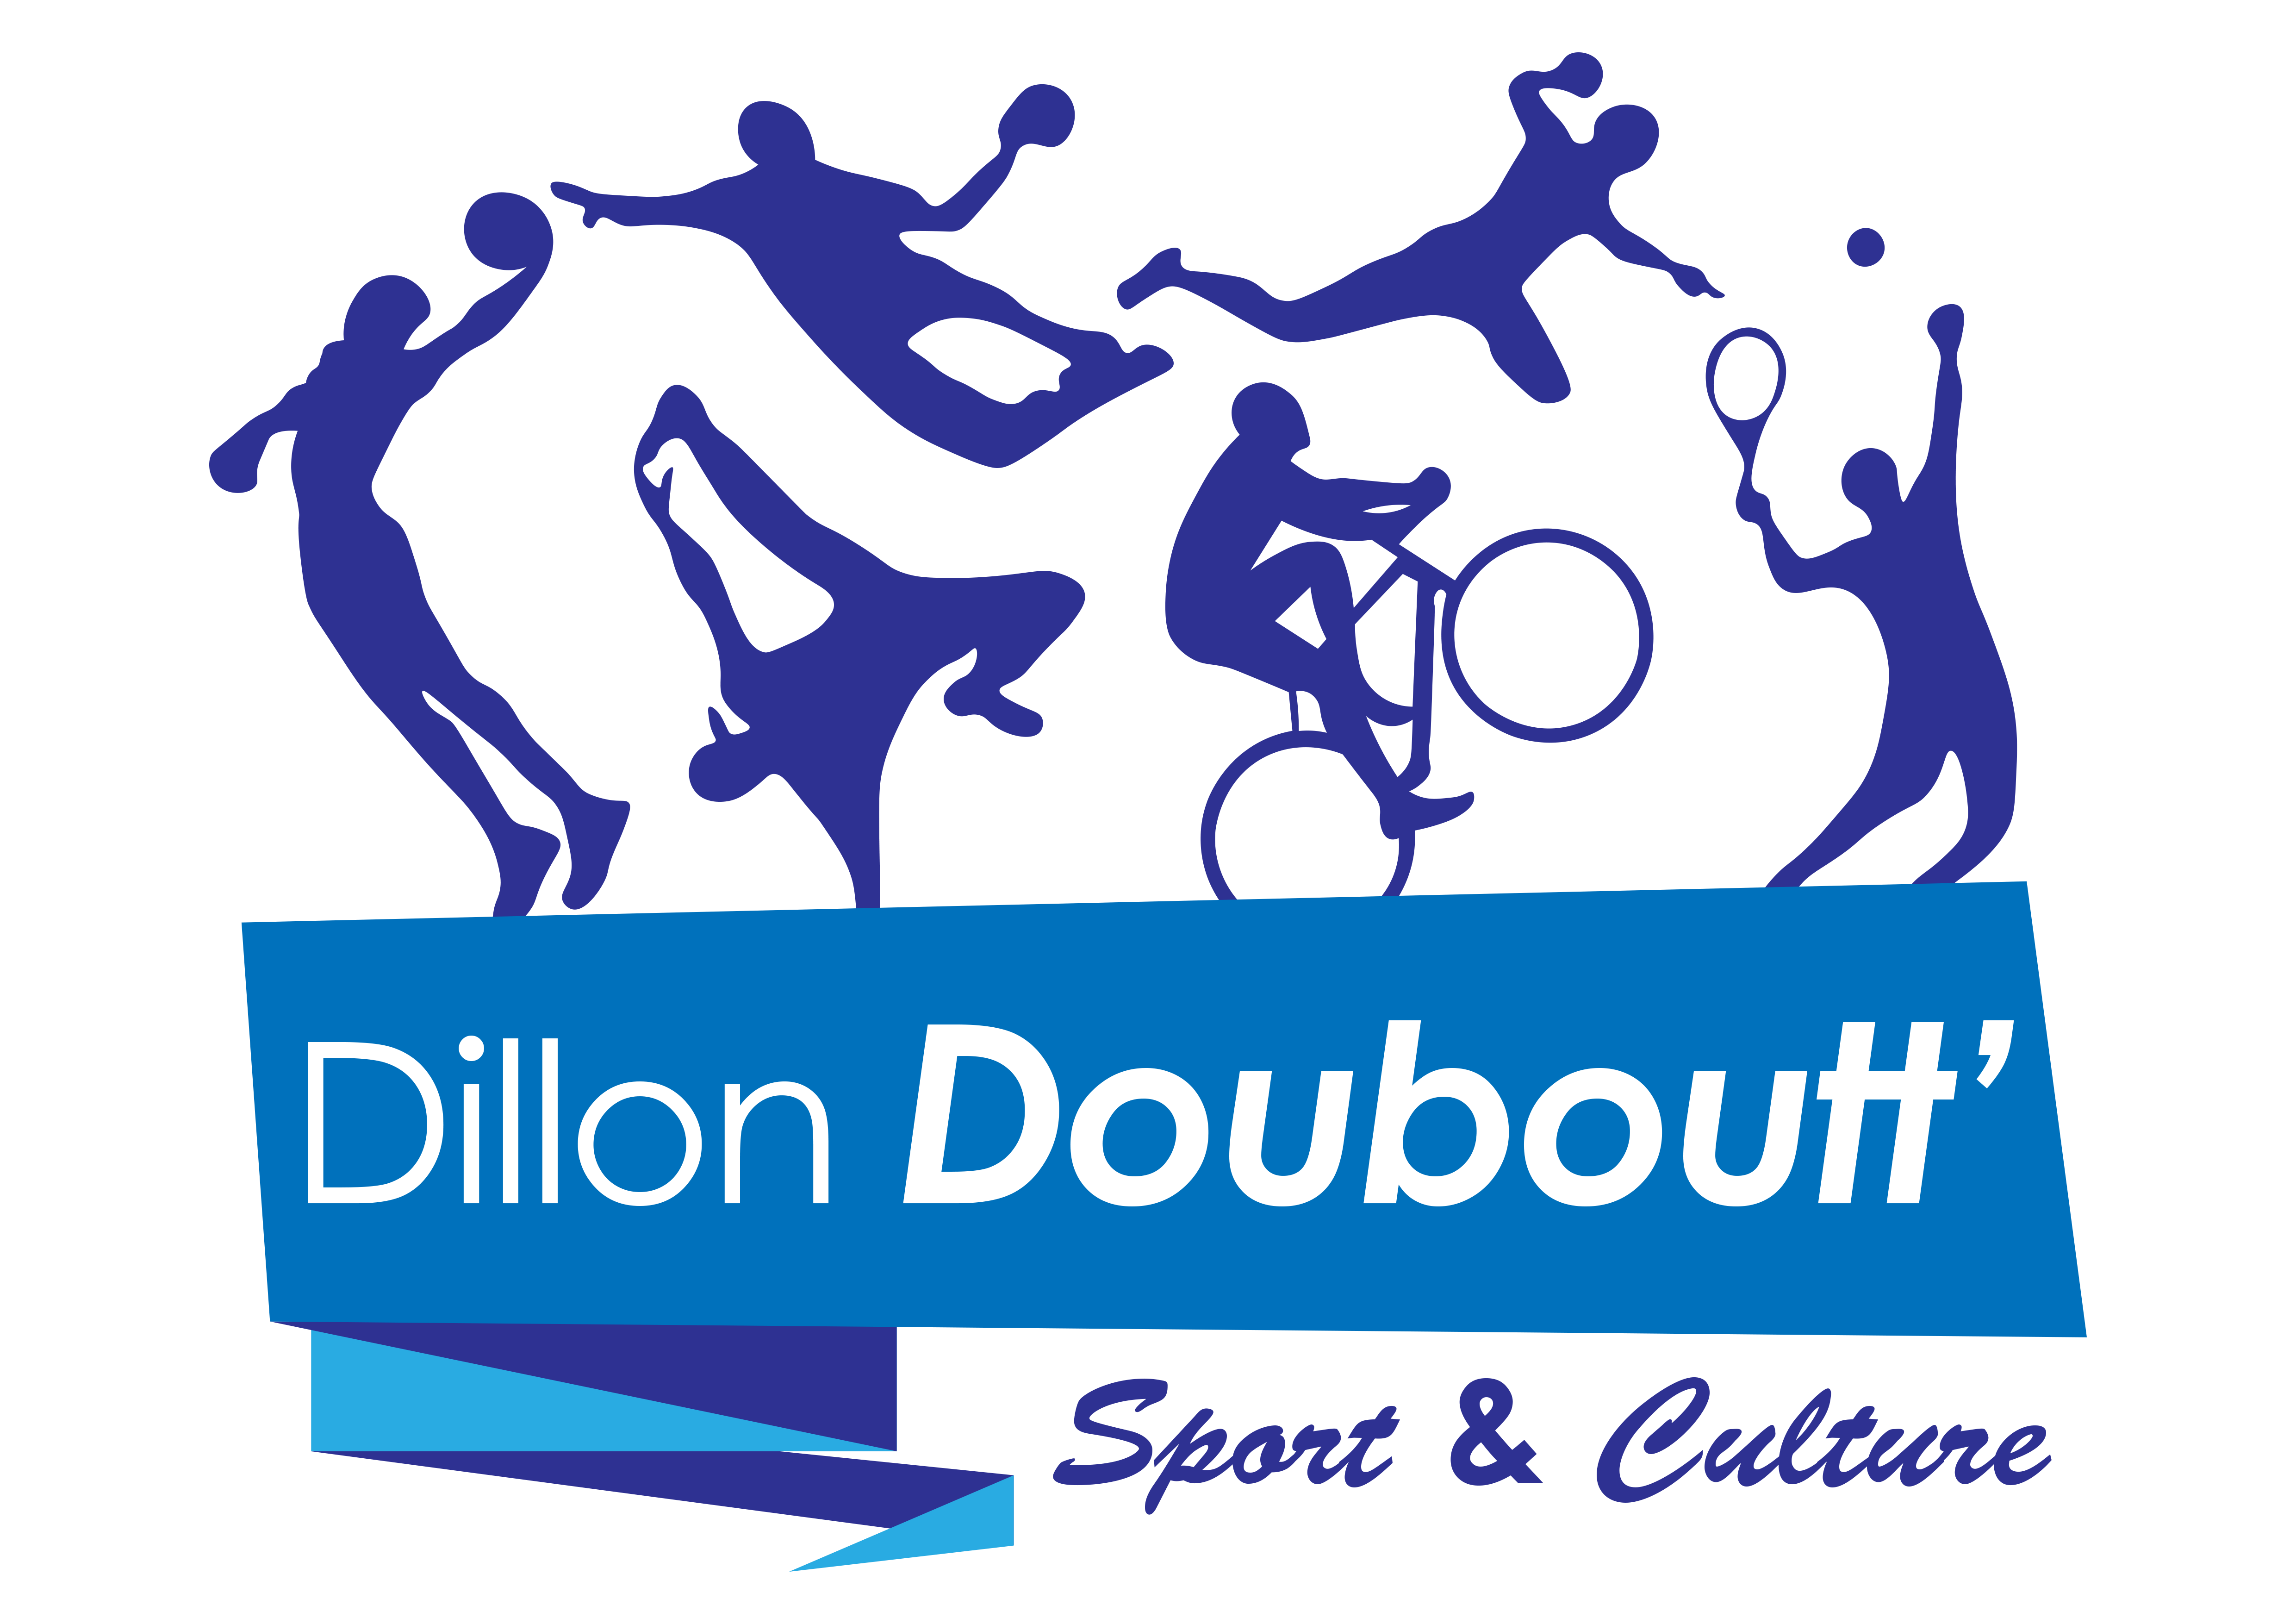 Dillon Douboutt